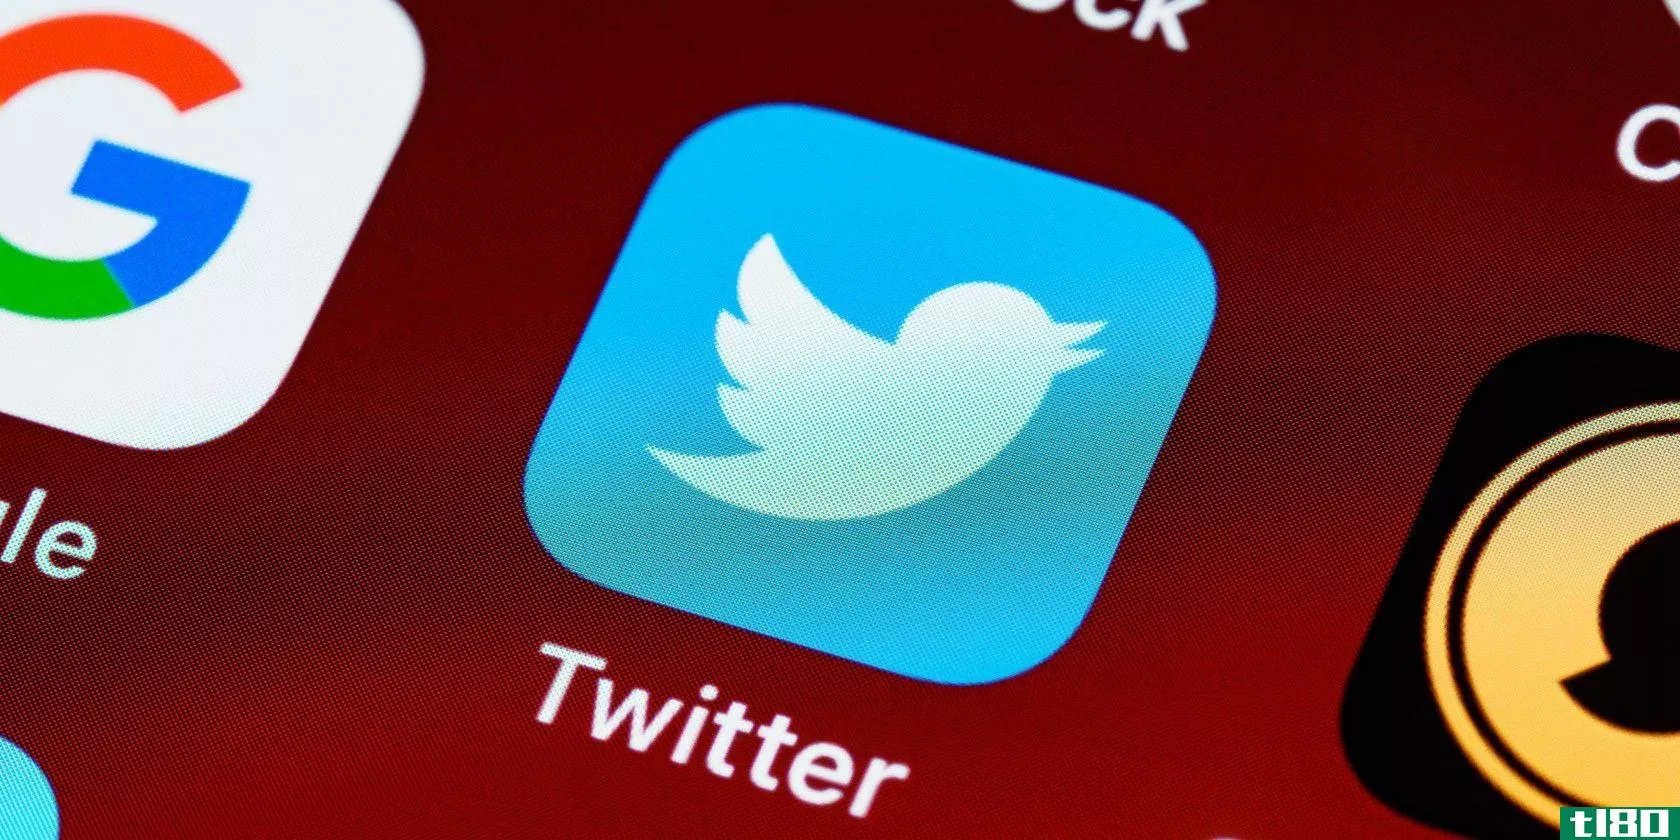 Twitter Bans Holocaust Denial